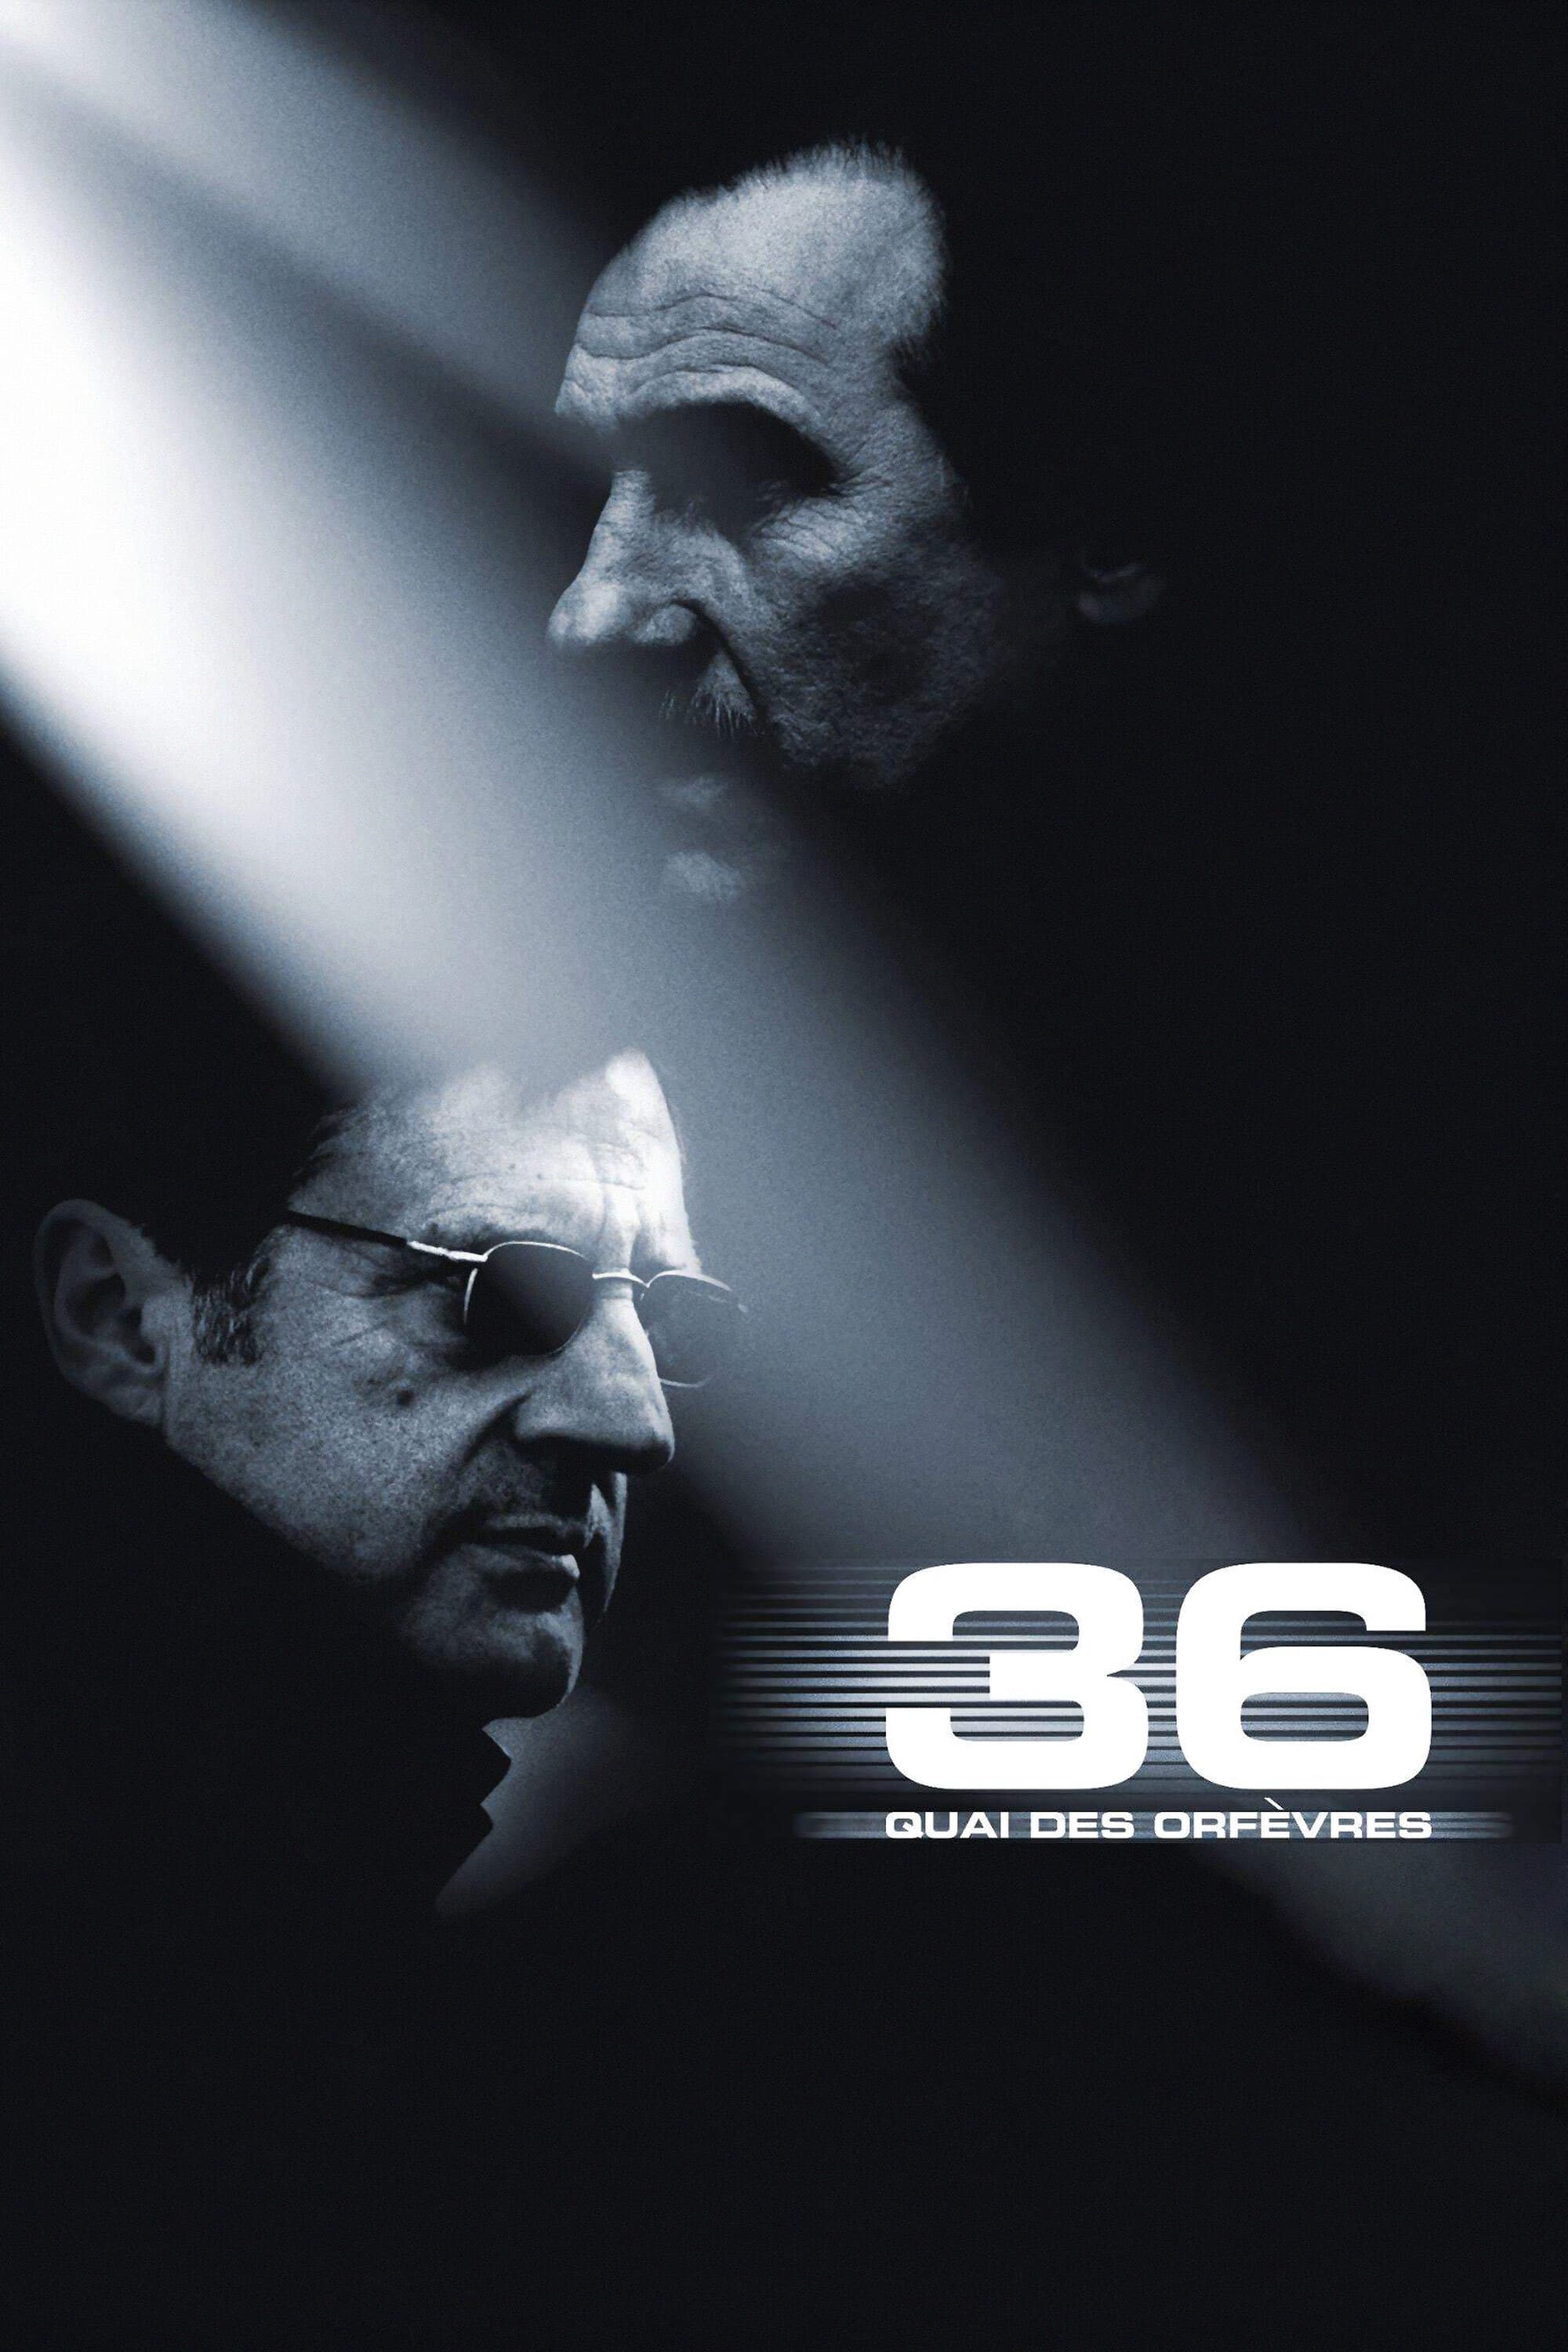 36th Precinct (2004)